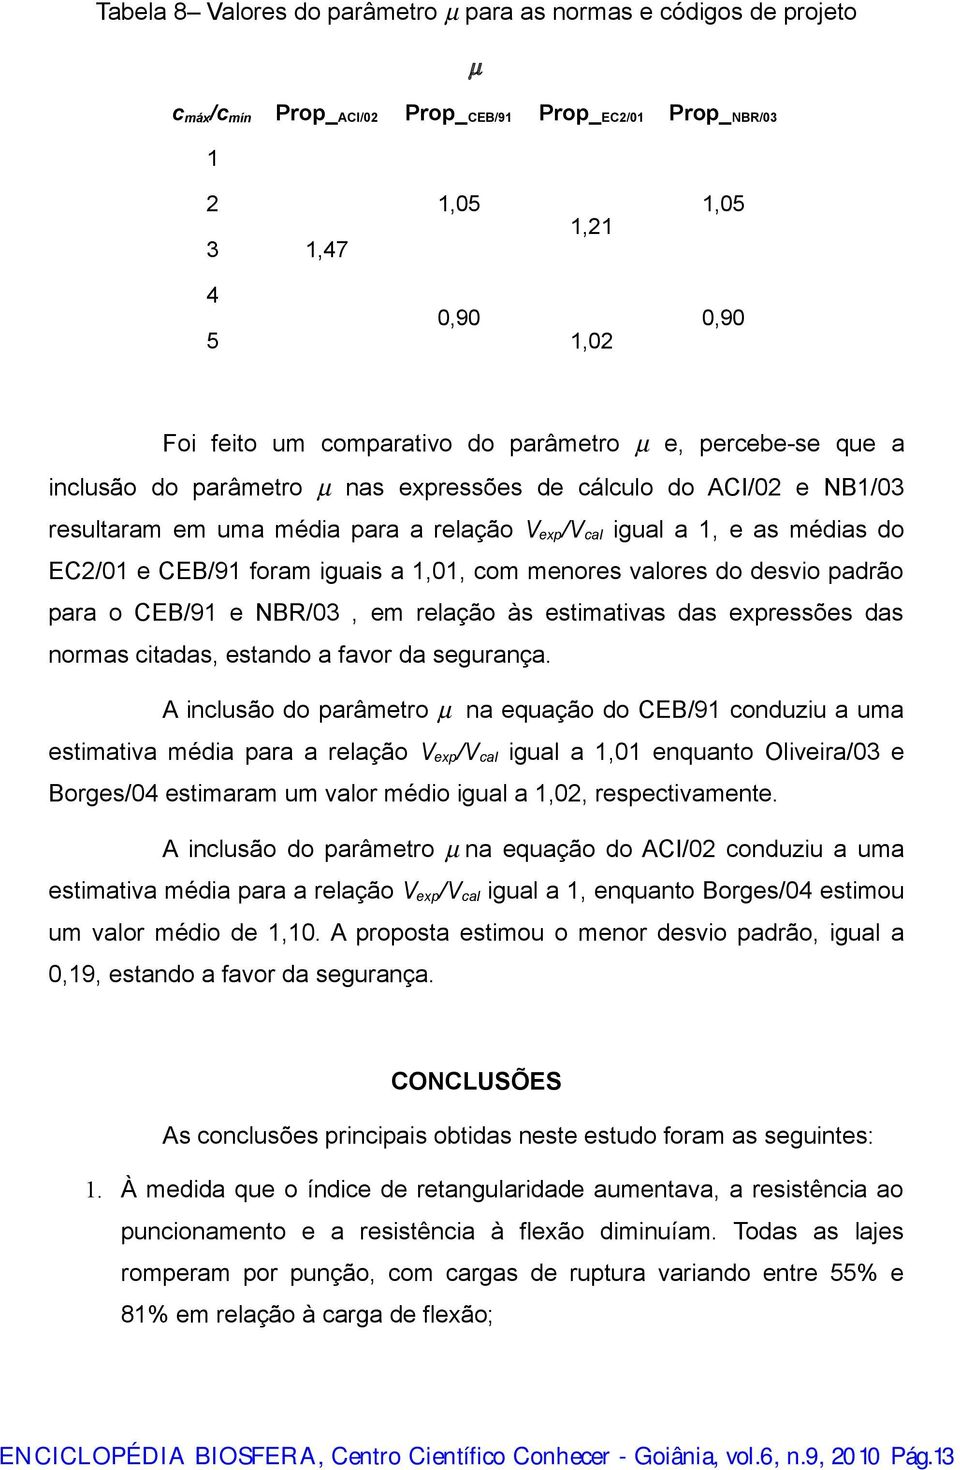 EC2/01 e CEB/91 foram iguais a 1,01, com menores valores do desvio padrão para o CEB/91 e NBR/03, em relação às estimativas das expressões das normas citadas, estando a favor da segurança.